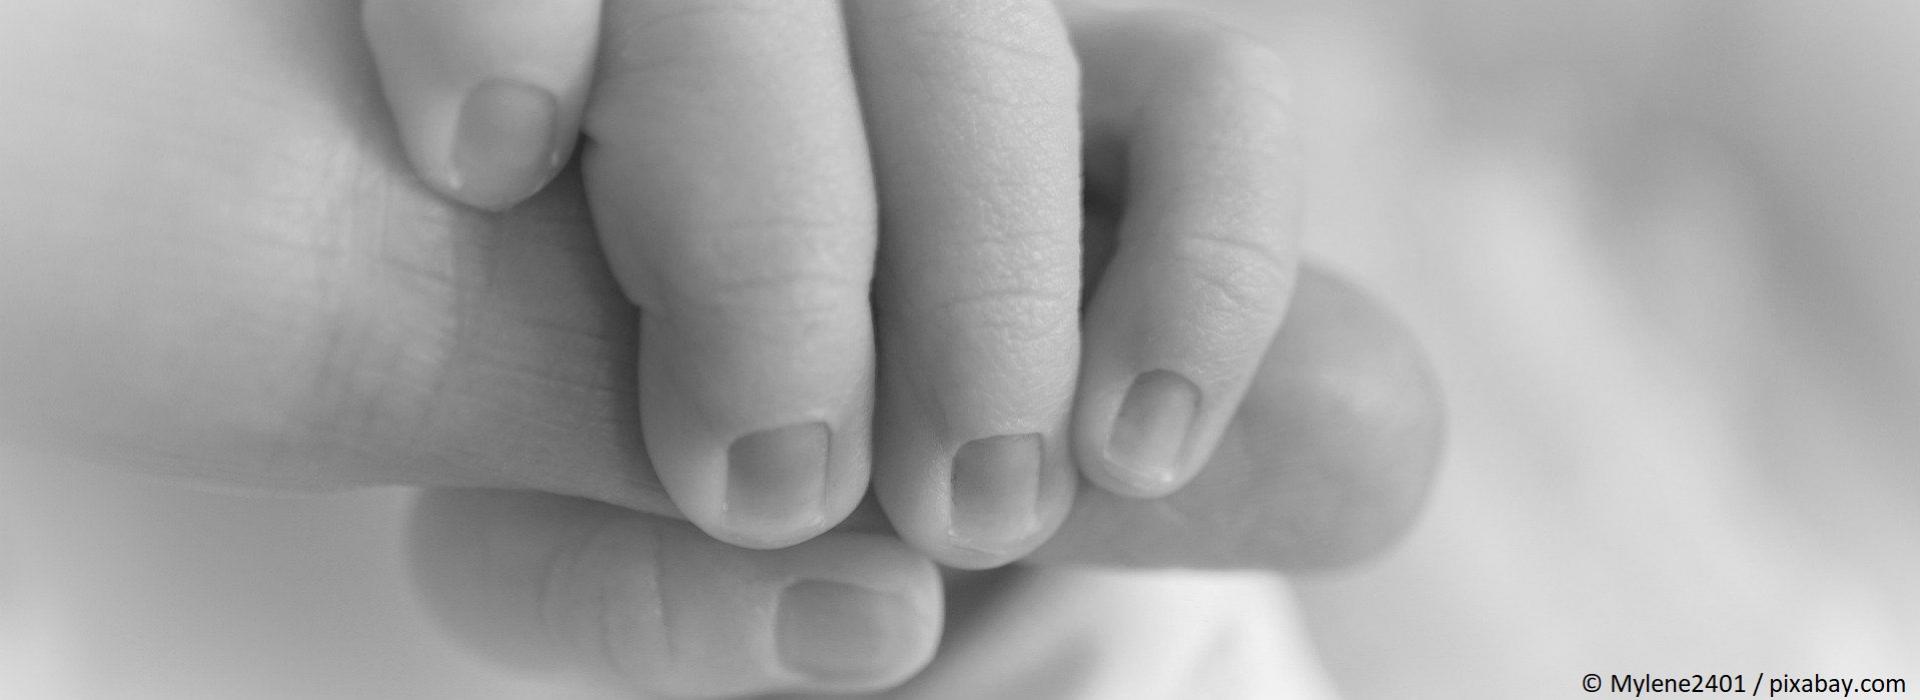 Babyhände mit copyright mylene2401 aus pixabay.com